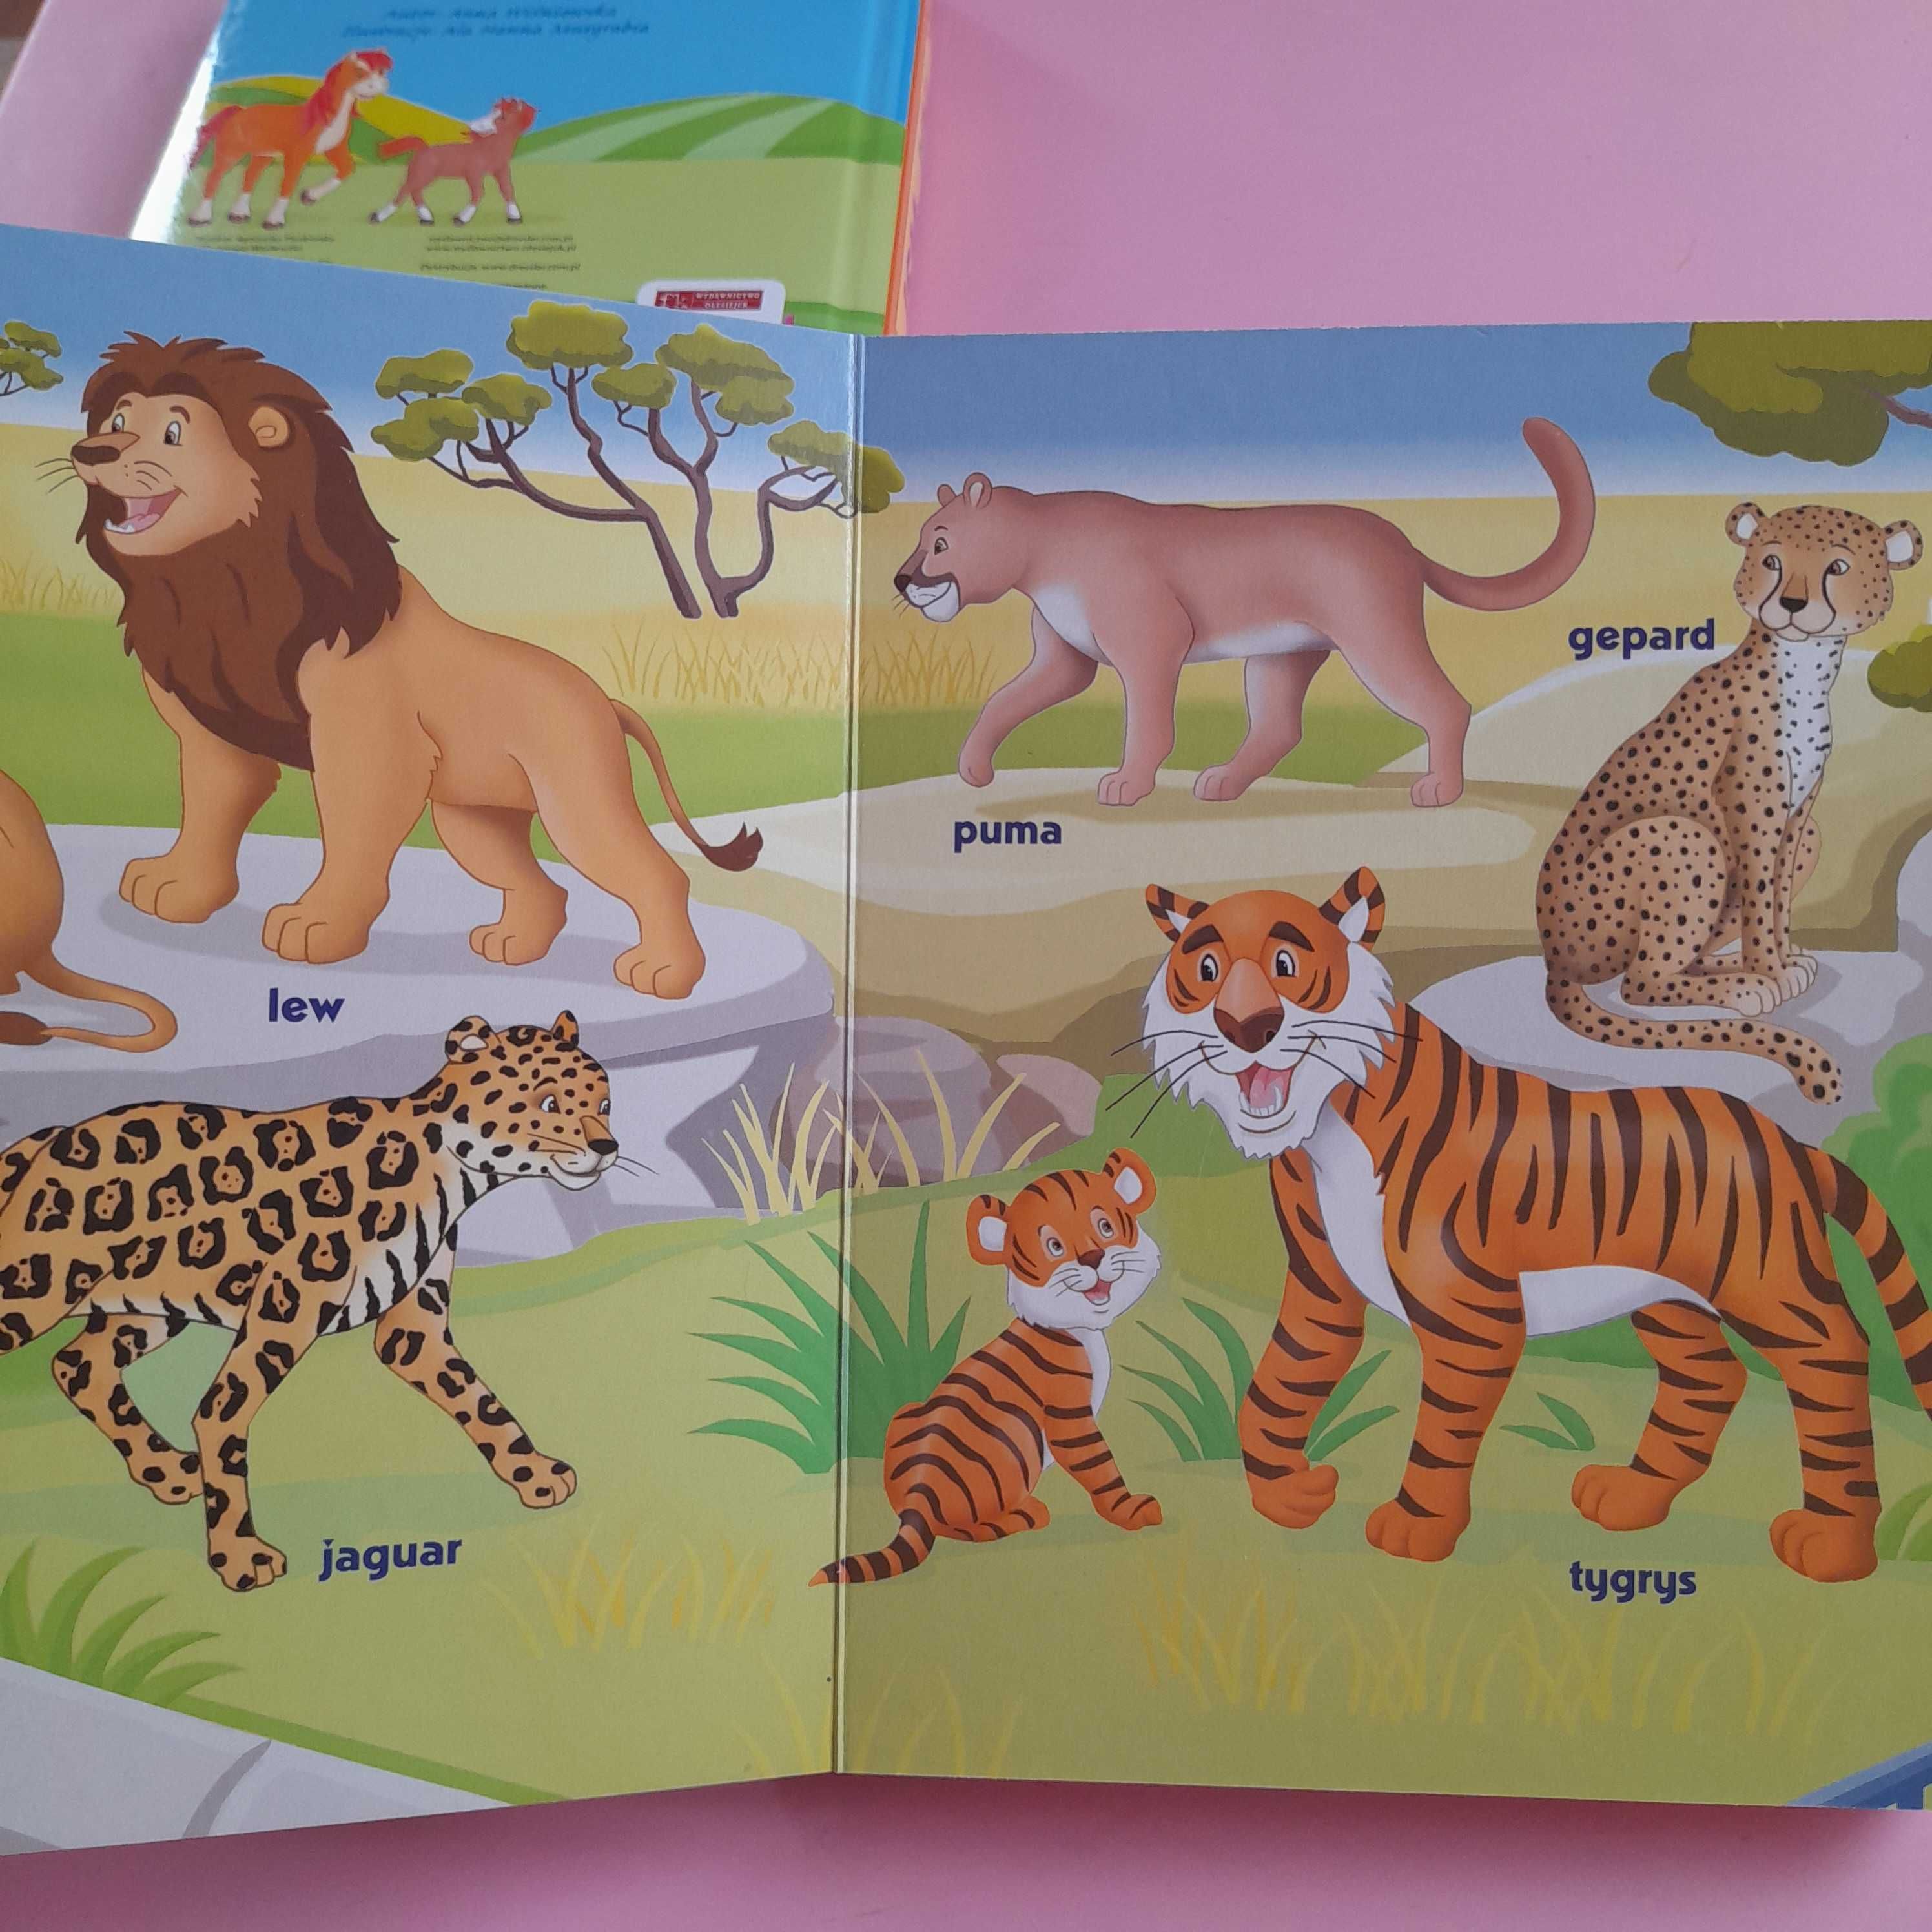 Książeczki zwierzęta W Zoo i Na Wsi dla dzieci ilustracje książka